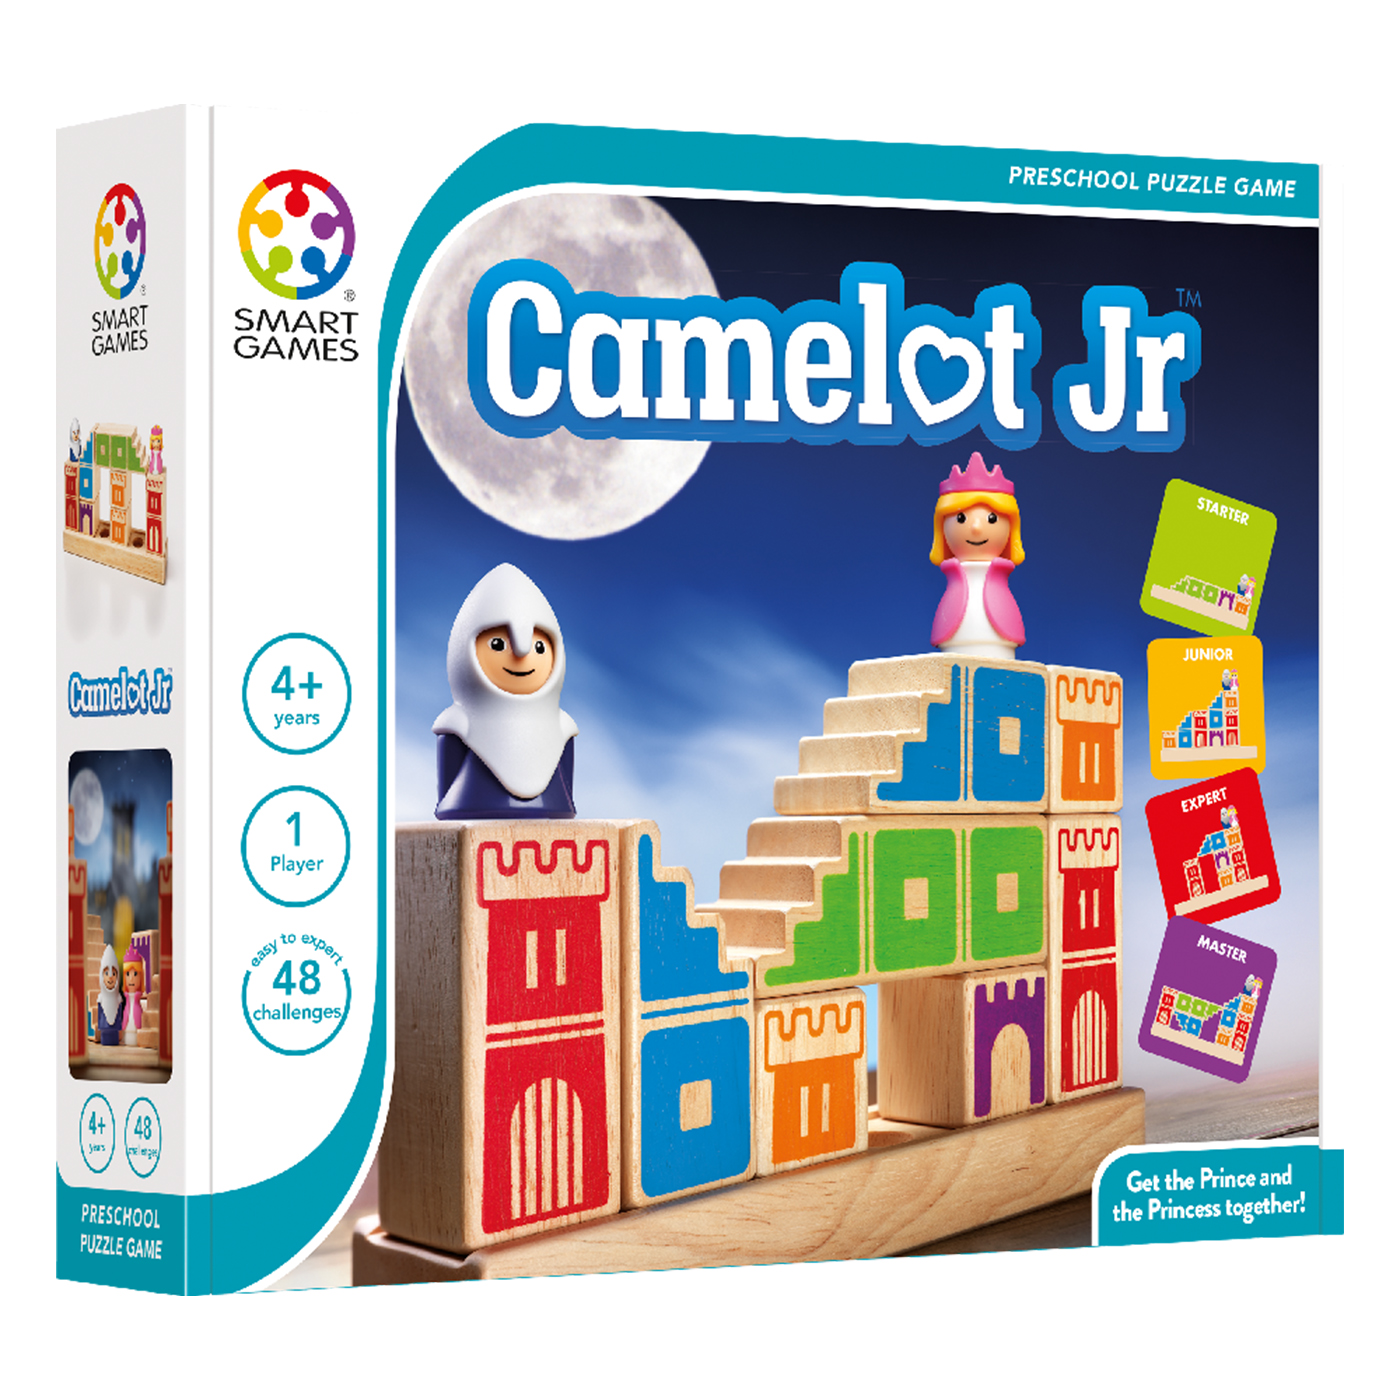 SMARTGAMES SmartGames Camelot Jr